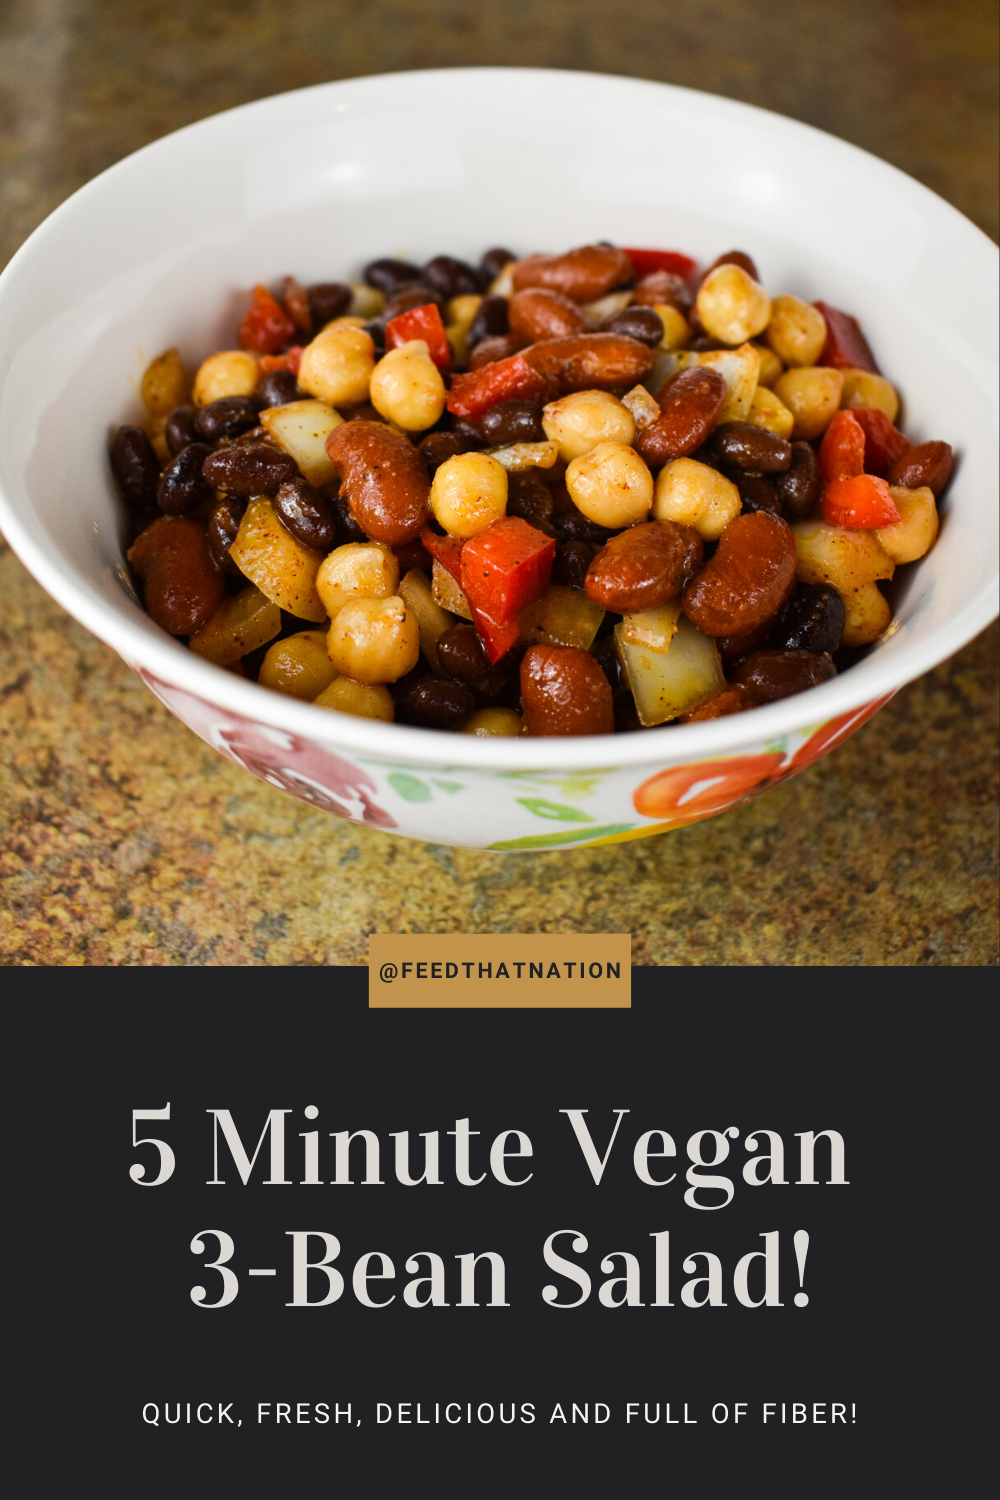 5 minute vegan 3-bean salad